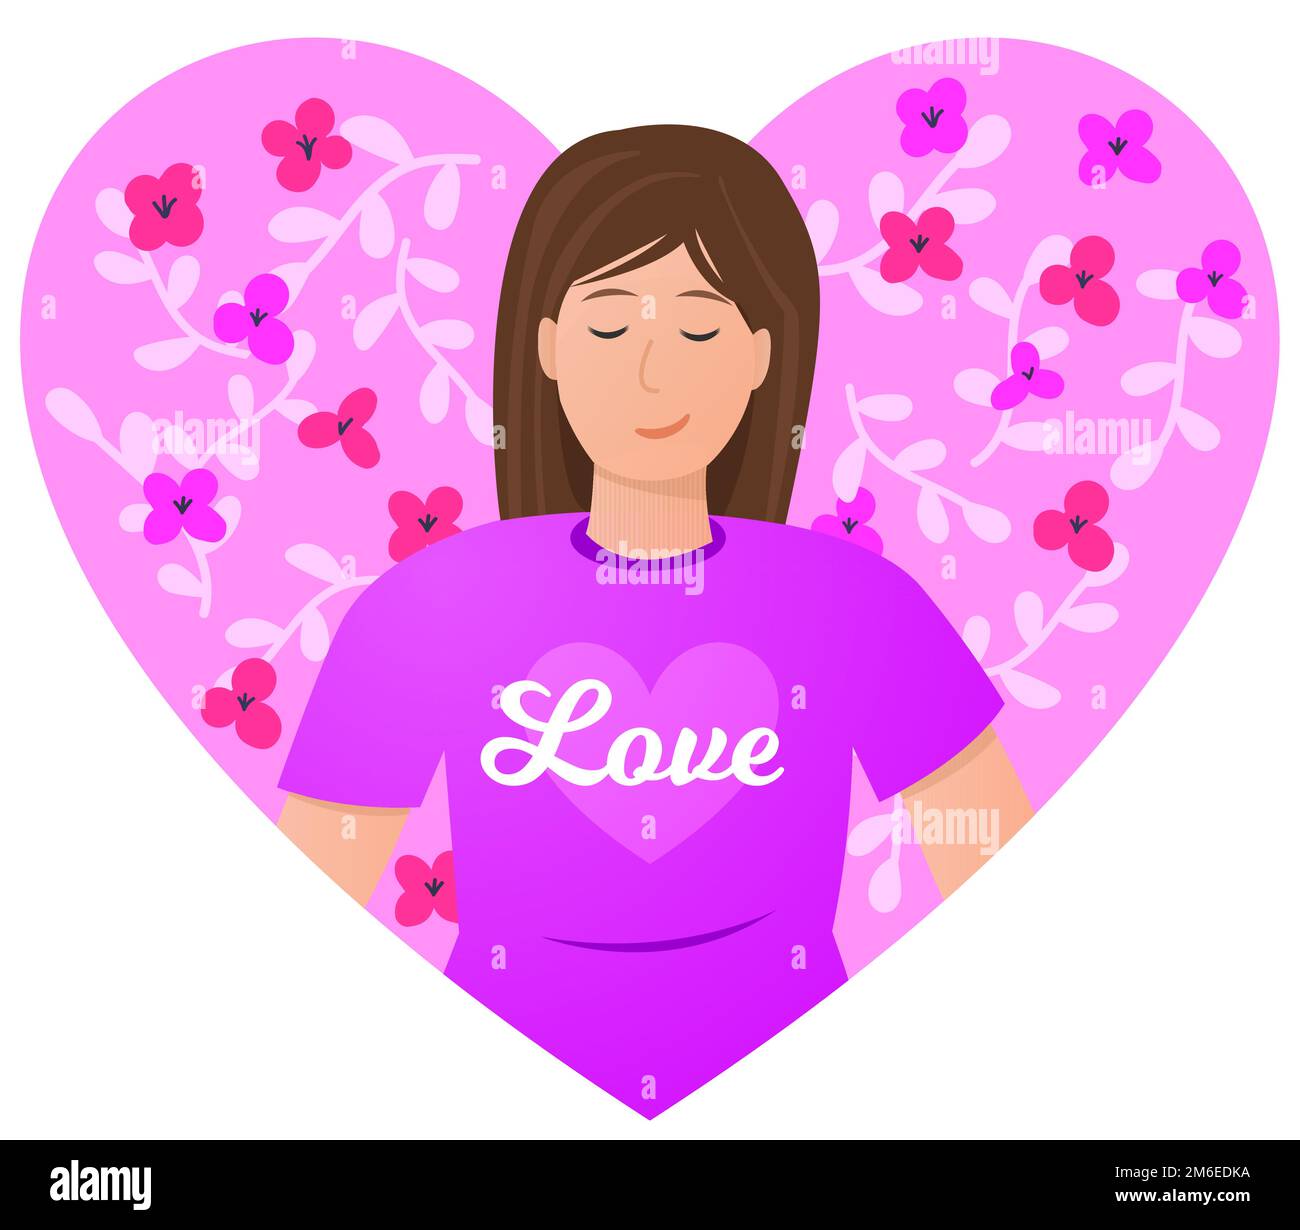 Personaggio donna all'interno di un cuore rosa con fiori. Amore concetto di illustrazione vettoriale. Carta San Valentino. Illustrazione Vettoriale